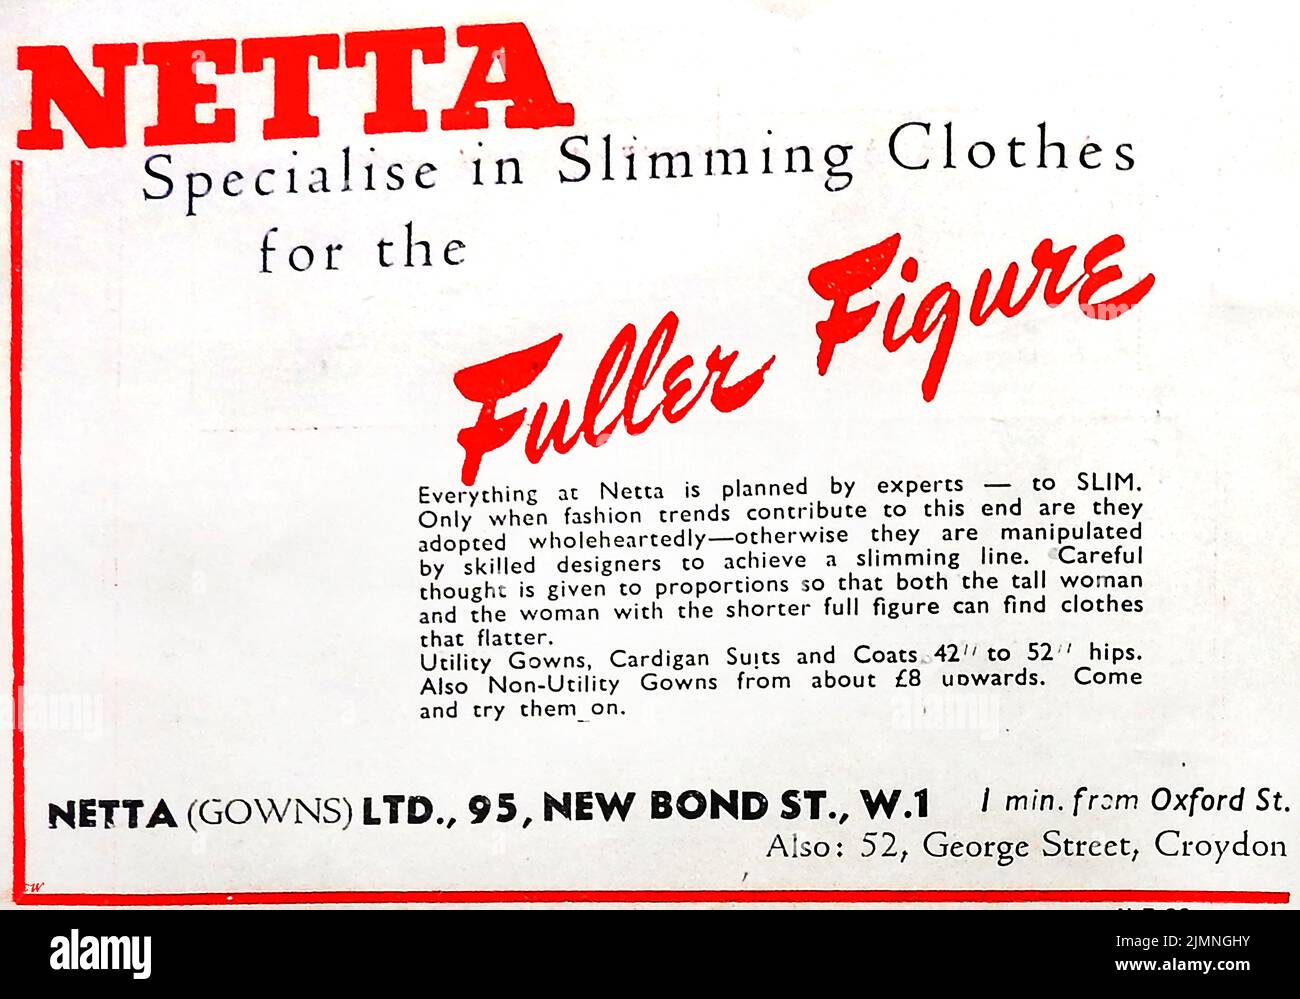 Un viejo anuncio de 1946 para Netta Gows especialista en adelgazamiento de ropa para la figura más completa Foto de stock